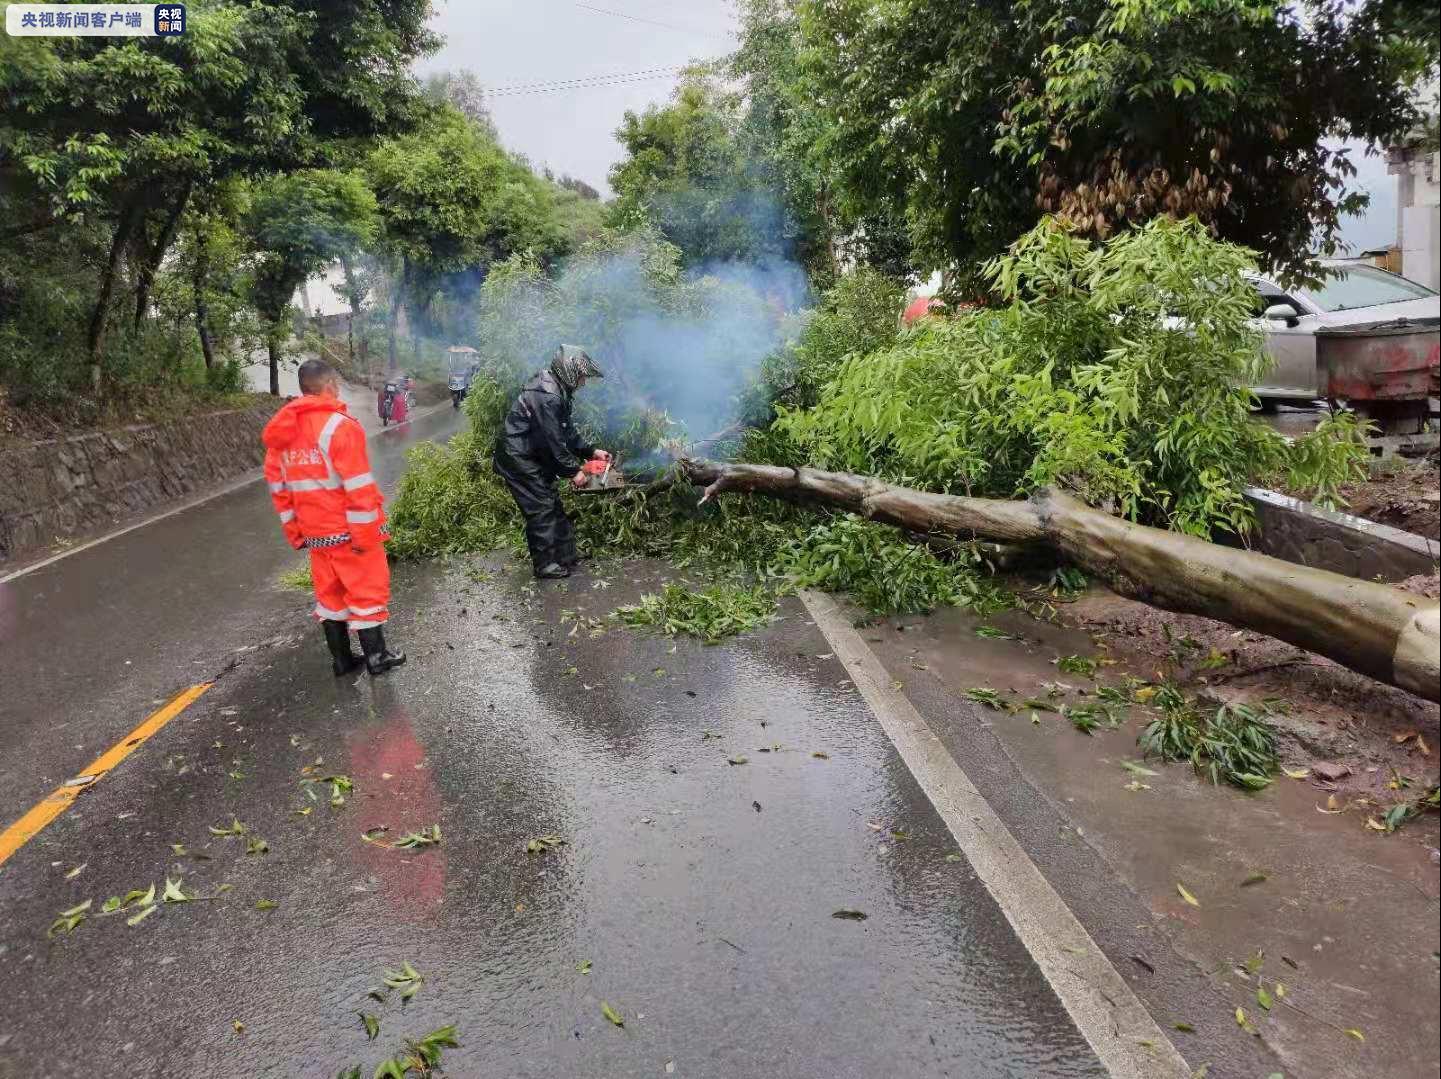 强降雨来袭 大风导致210国道多处行道树倒伏道路受阻